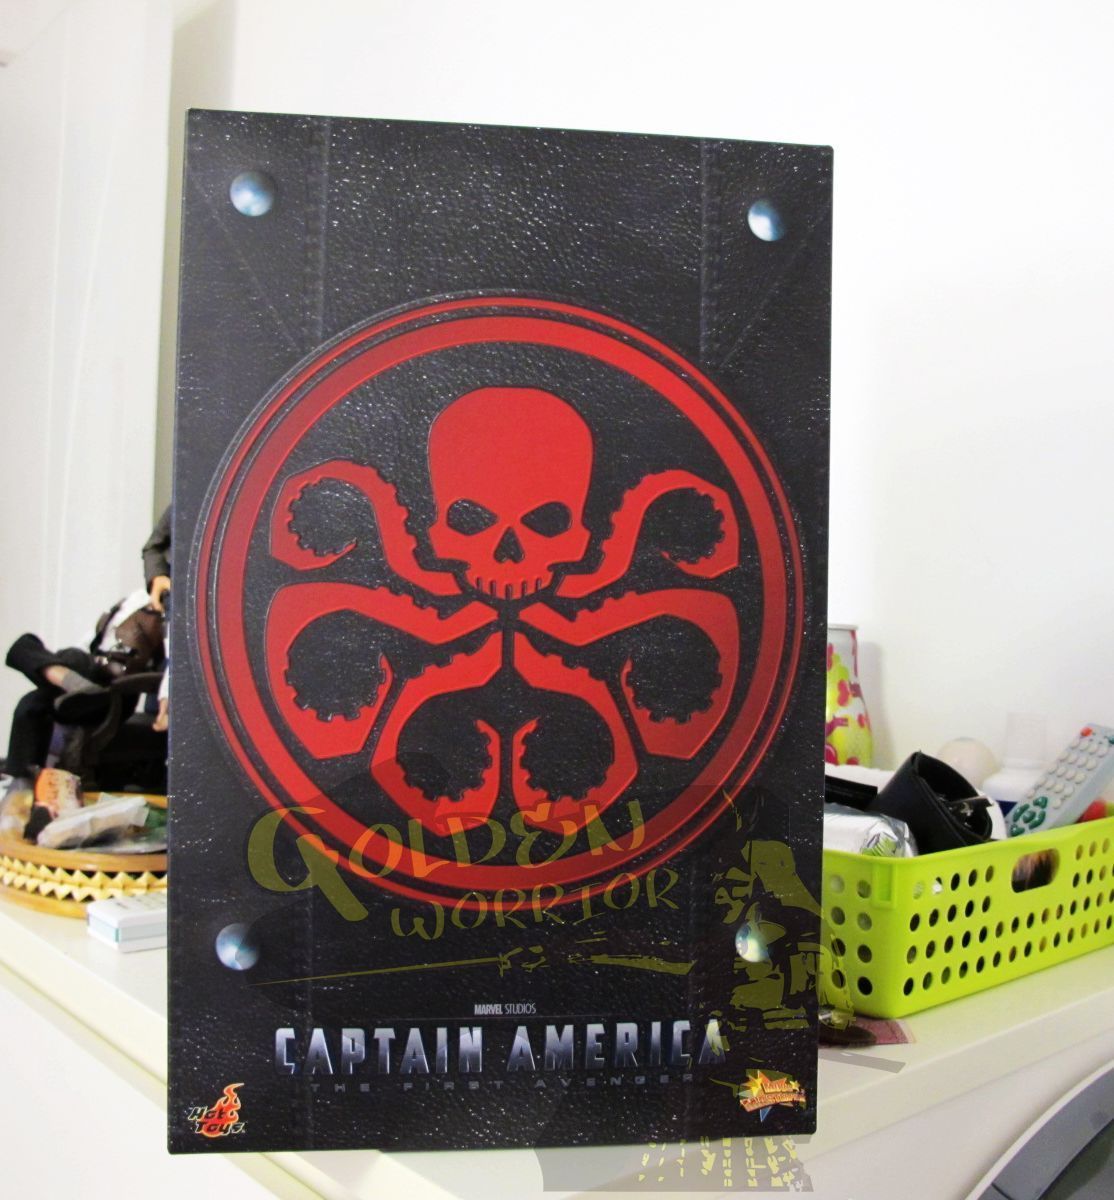  Toys Captain America Red Skull Limited Hugo Weaving FreeShip